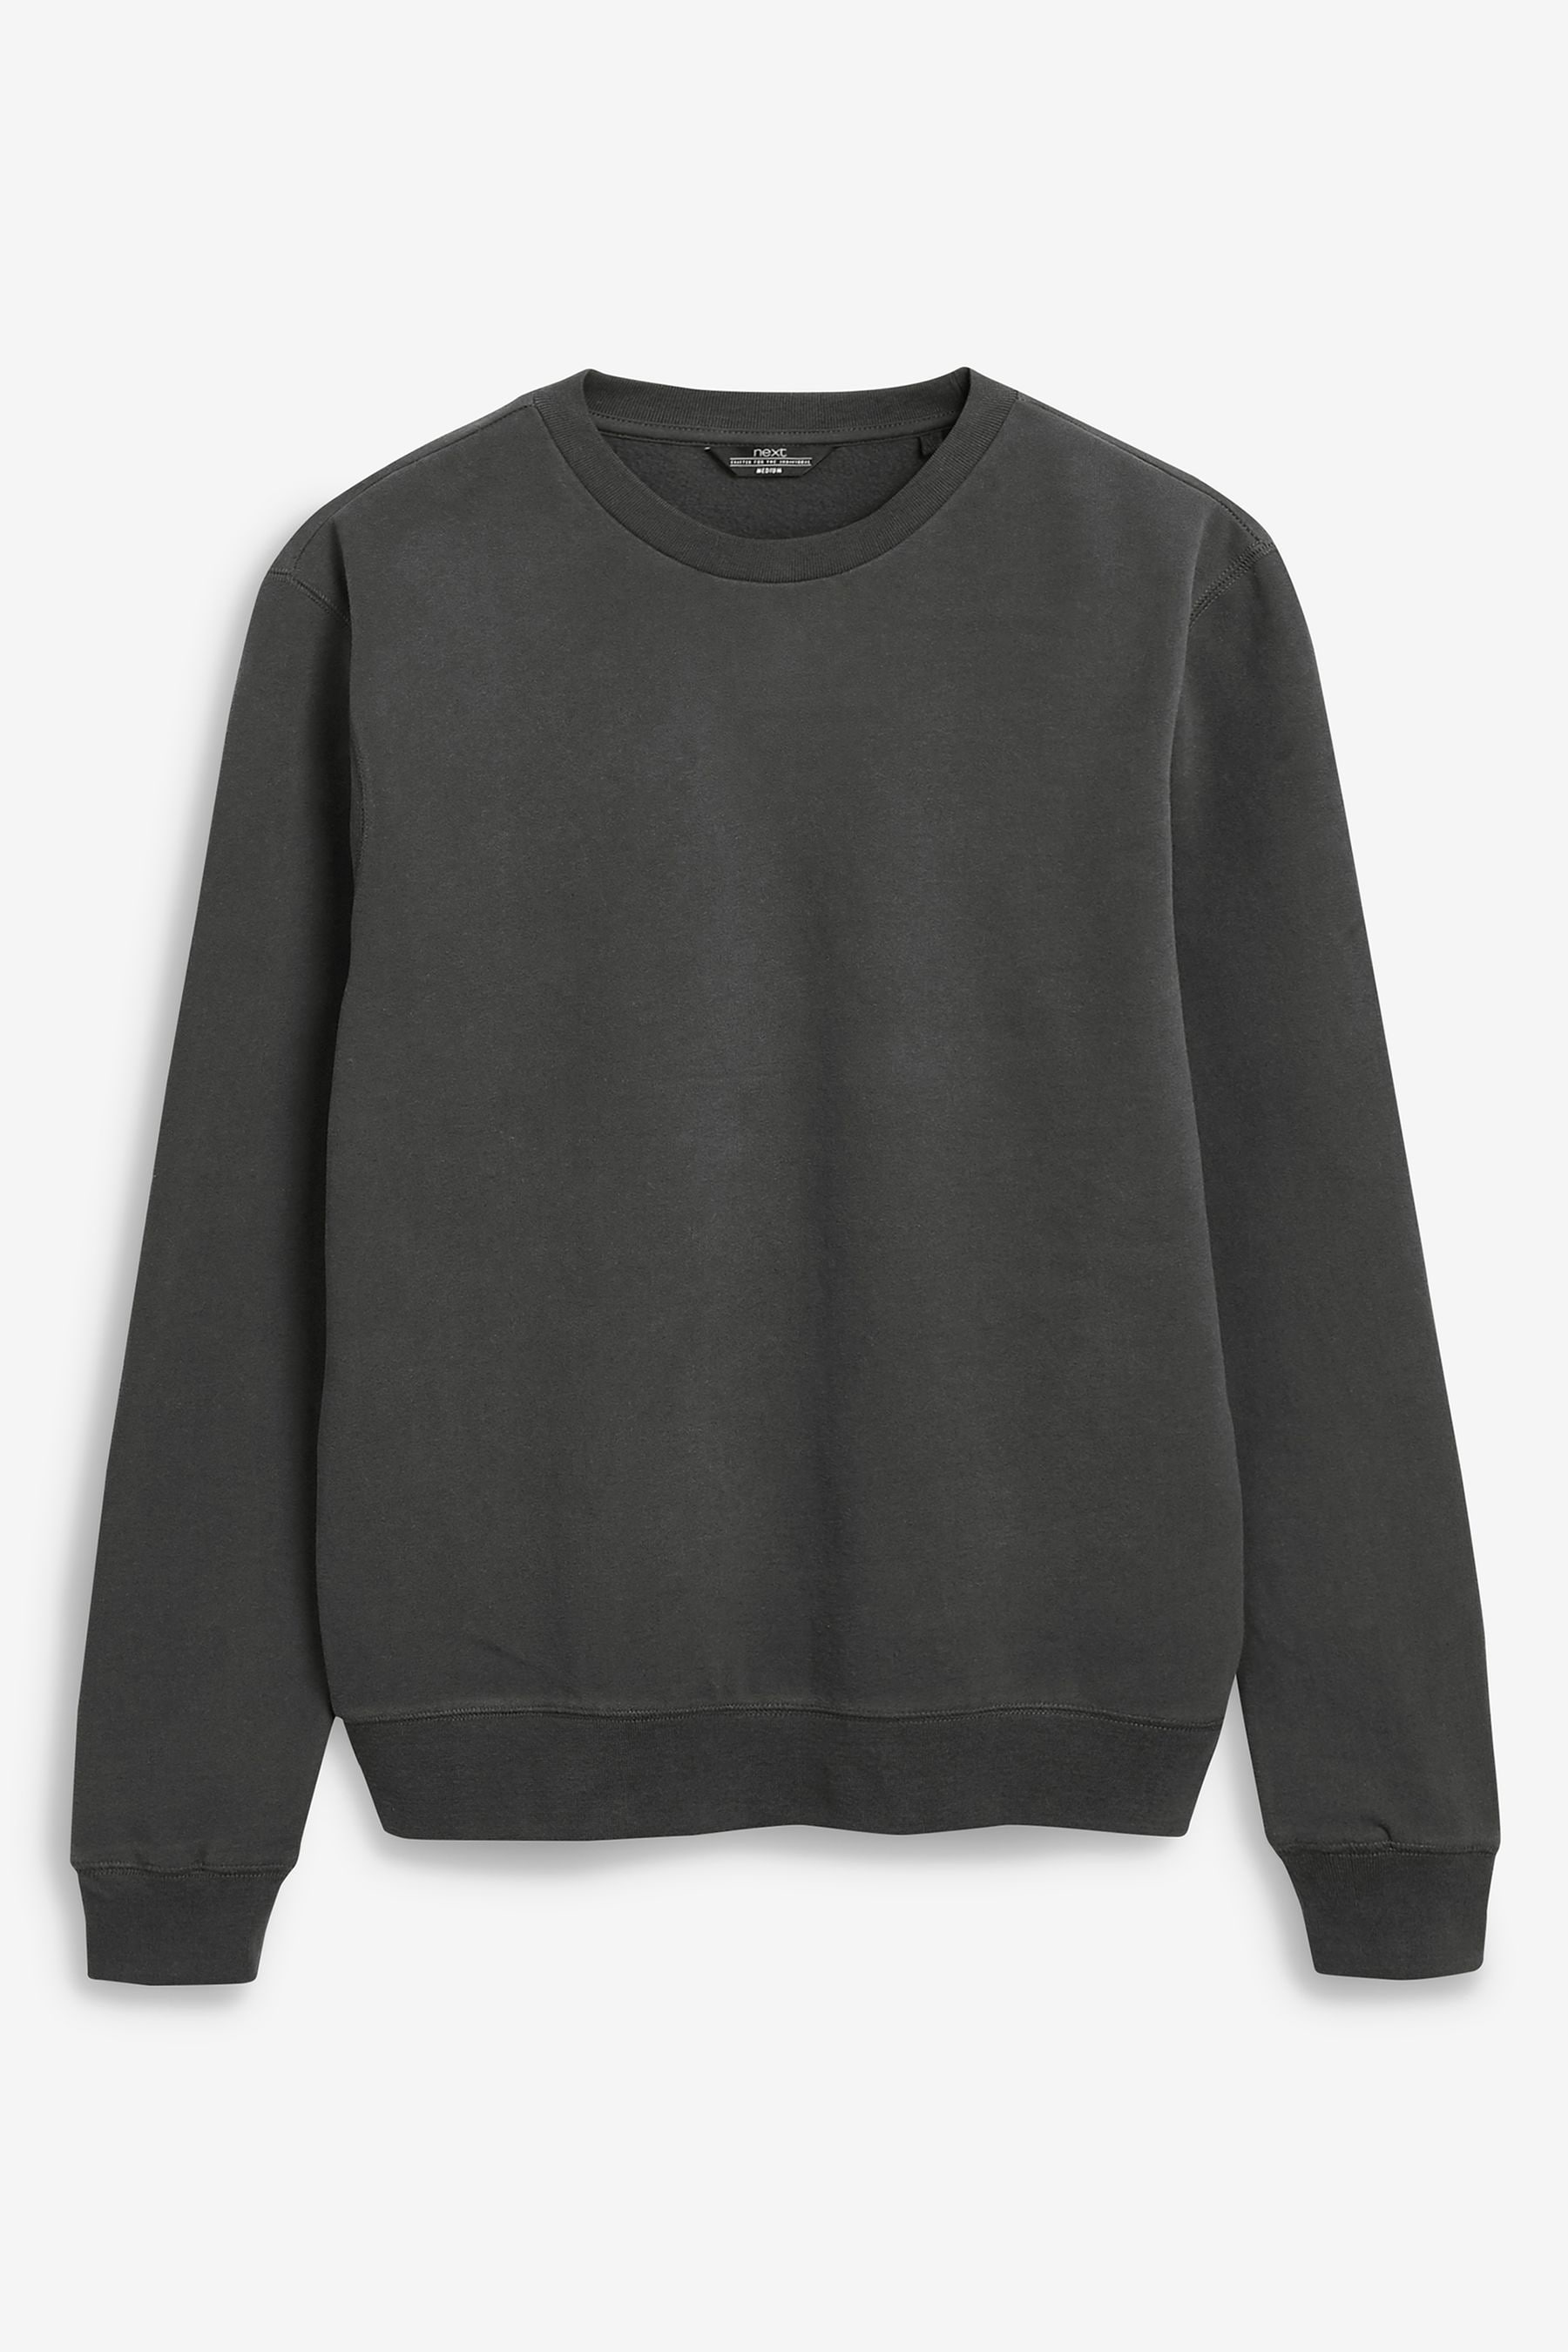 Buy Charcoal Grey Crew Sweatshirt from the Next UK online shop